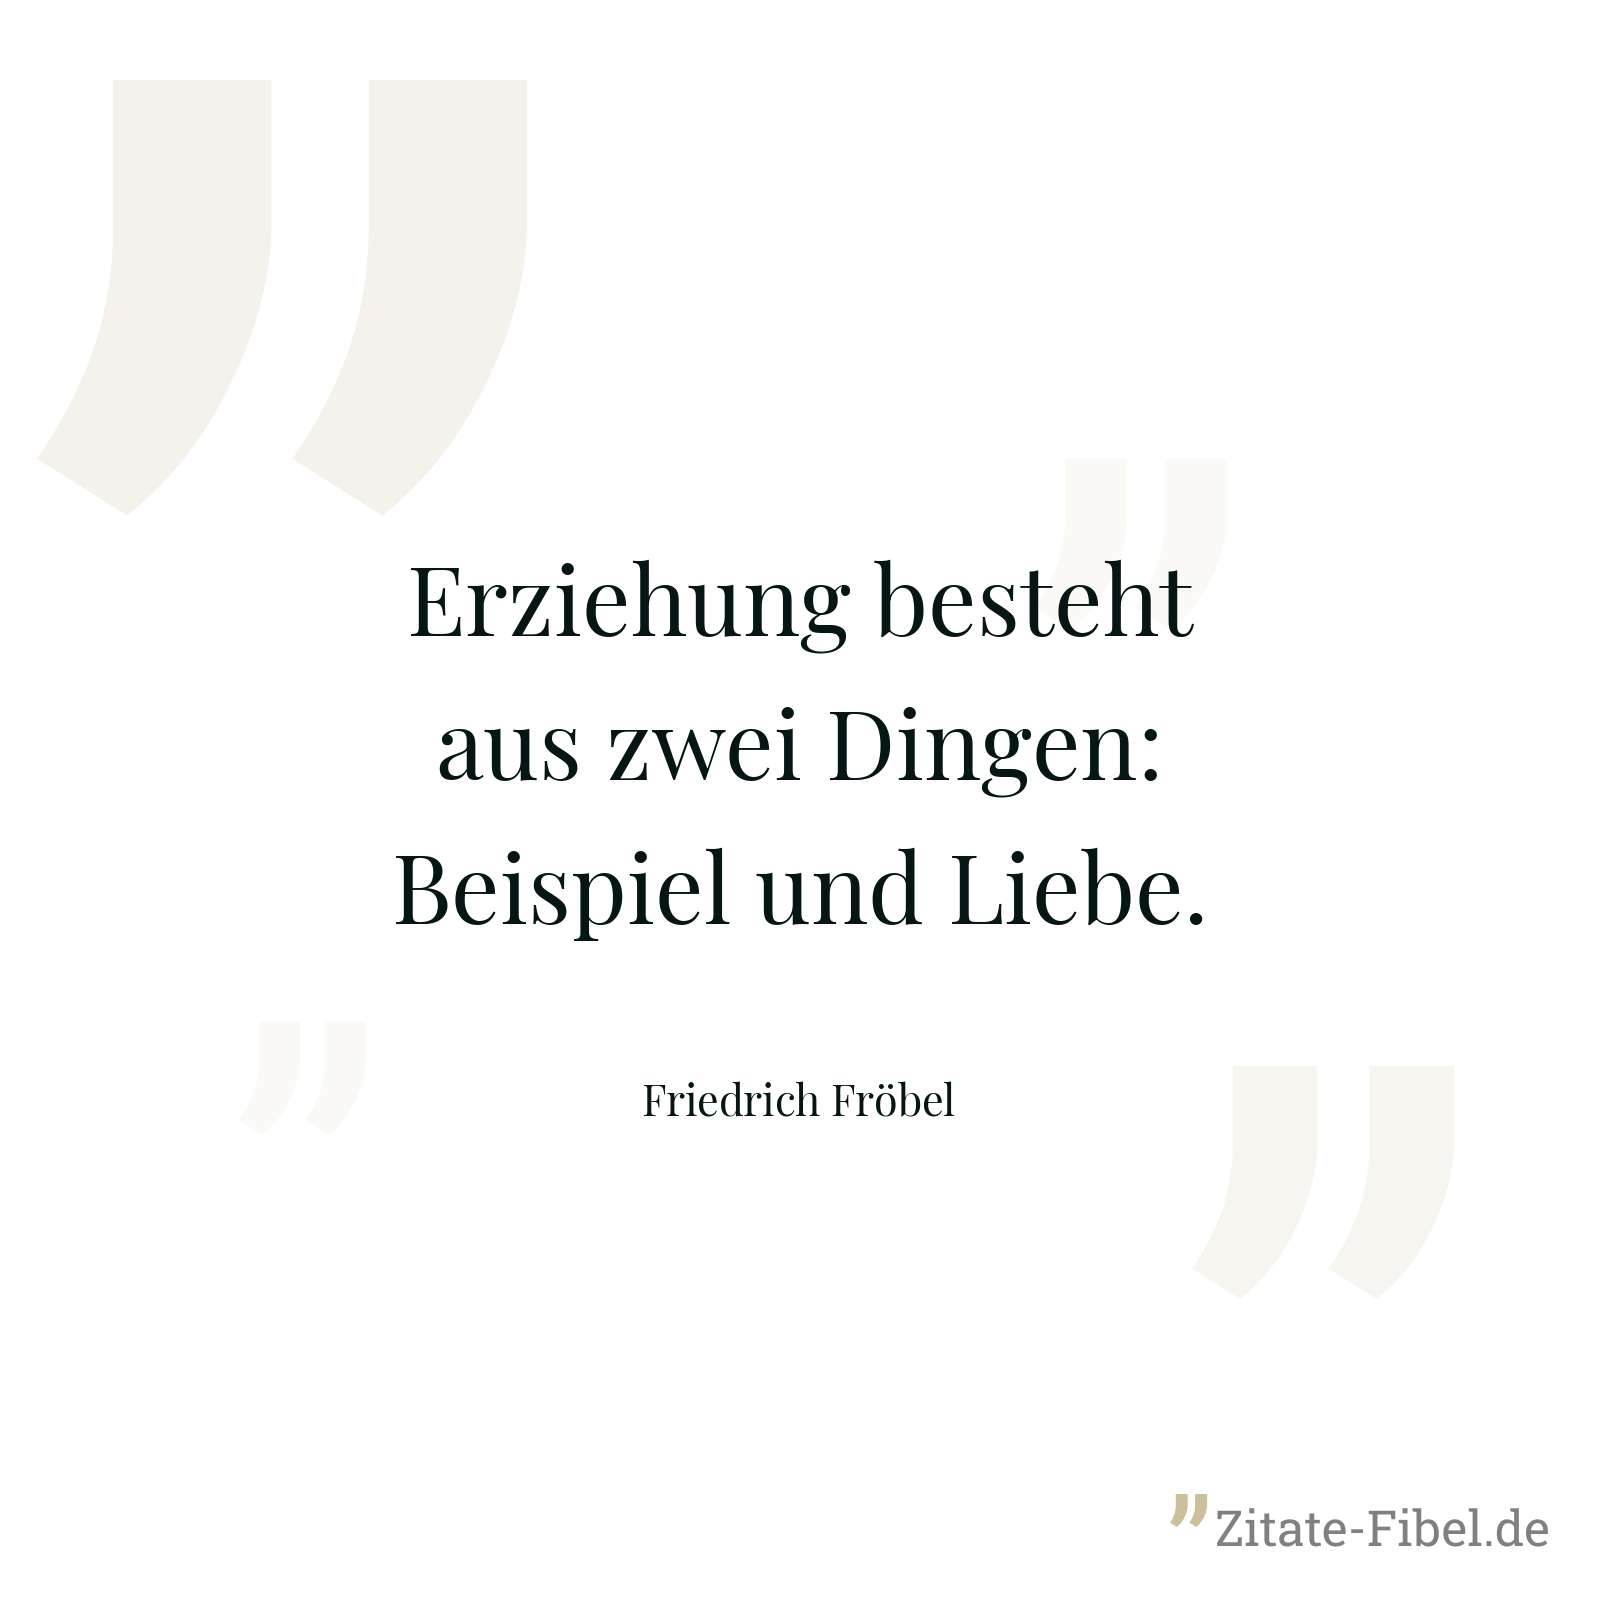 Erziehung besteht aus zwei Dingen: Beispiel und Liebe. - Friedrich Fröbel